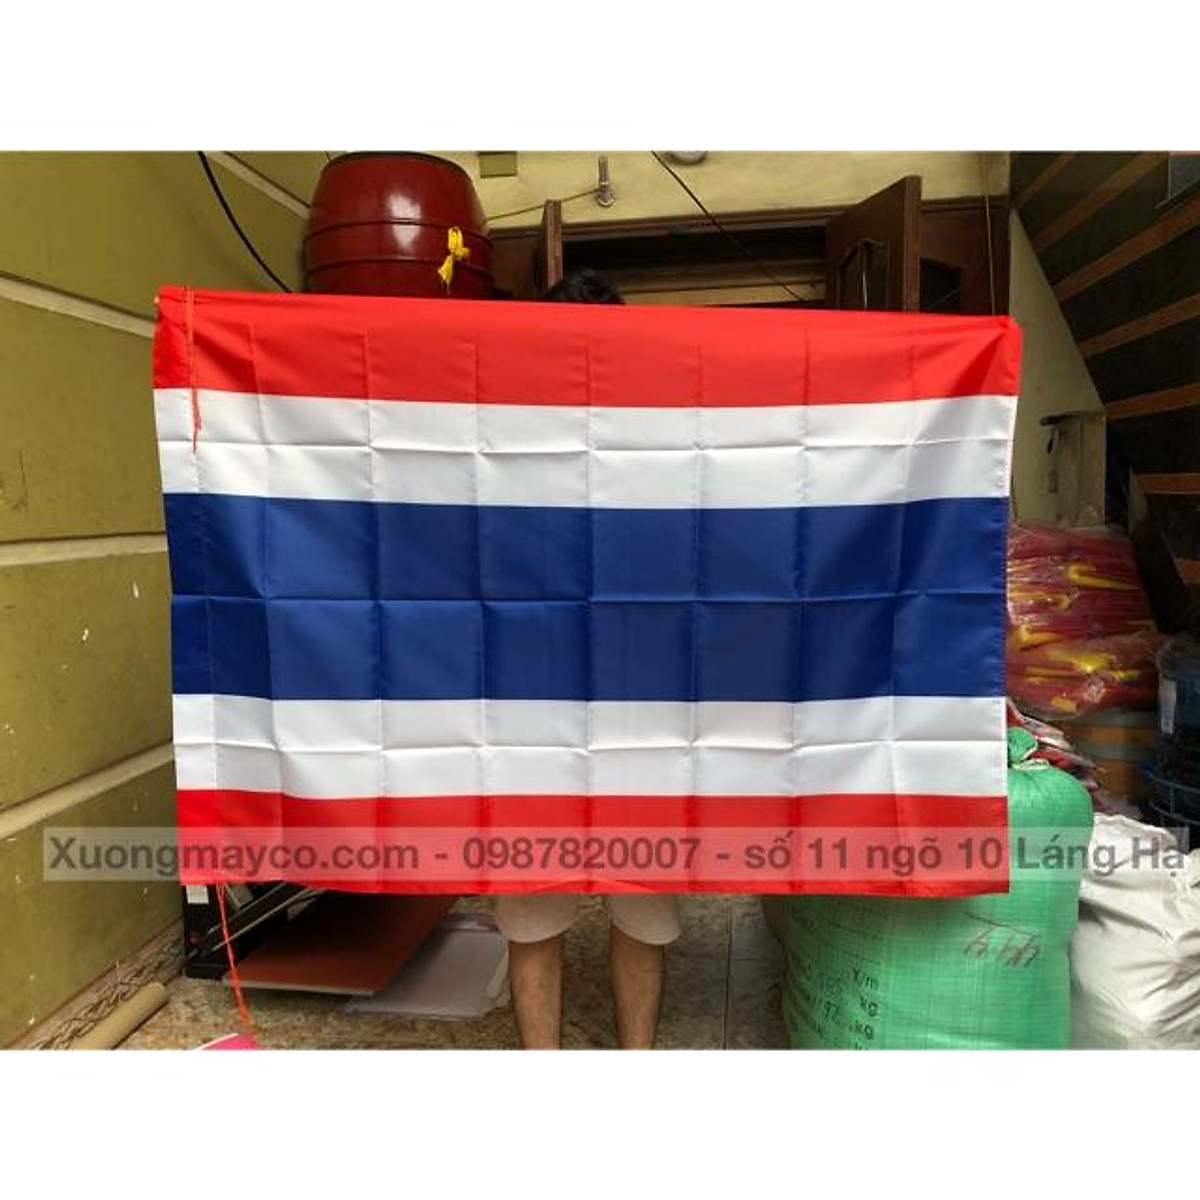 May cờ hoàng gia Thái Lan - sự kết hợp hoàn hảo giữa truyền thống và hiện đại! Với các công nghệ sản xuất tiên tiến, cờ hoàng gia Thái Lan đã được đưa lên một tầm cao mới về chất lượng cũng như độ bền. Đặt hàng ngay để sở hữu một sản phẩm thật sự đẳng cấp và đầy ý nghĩa!